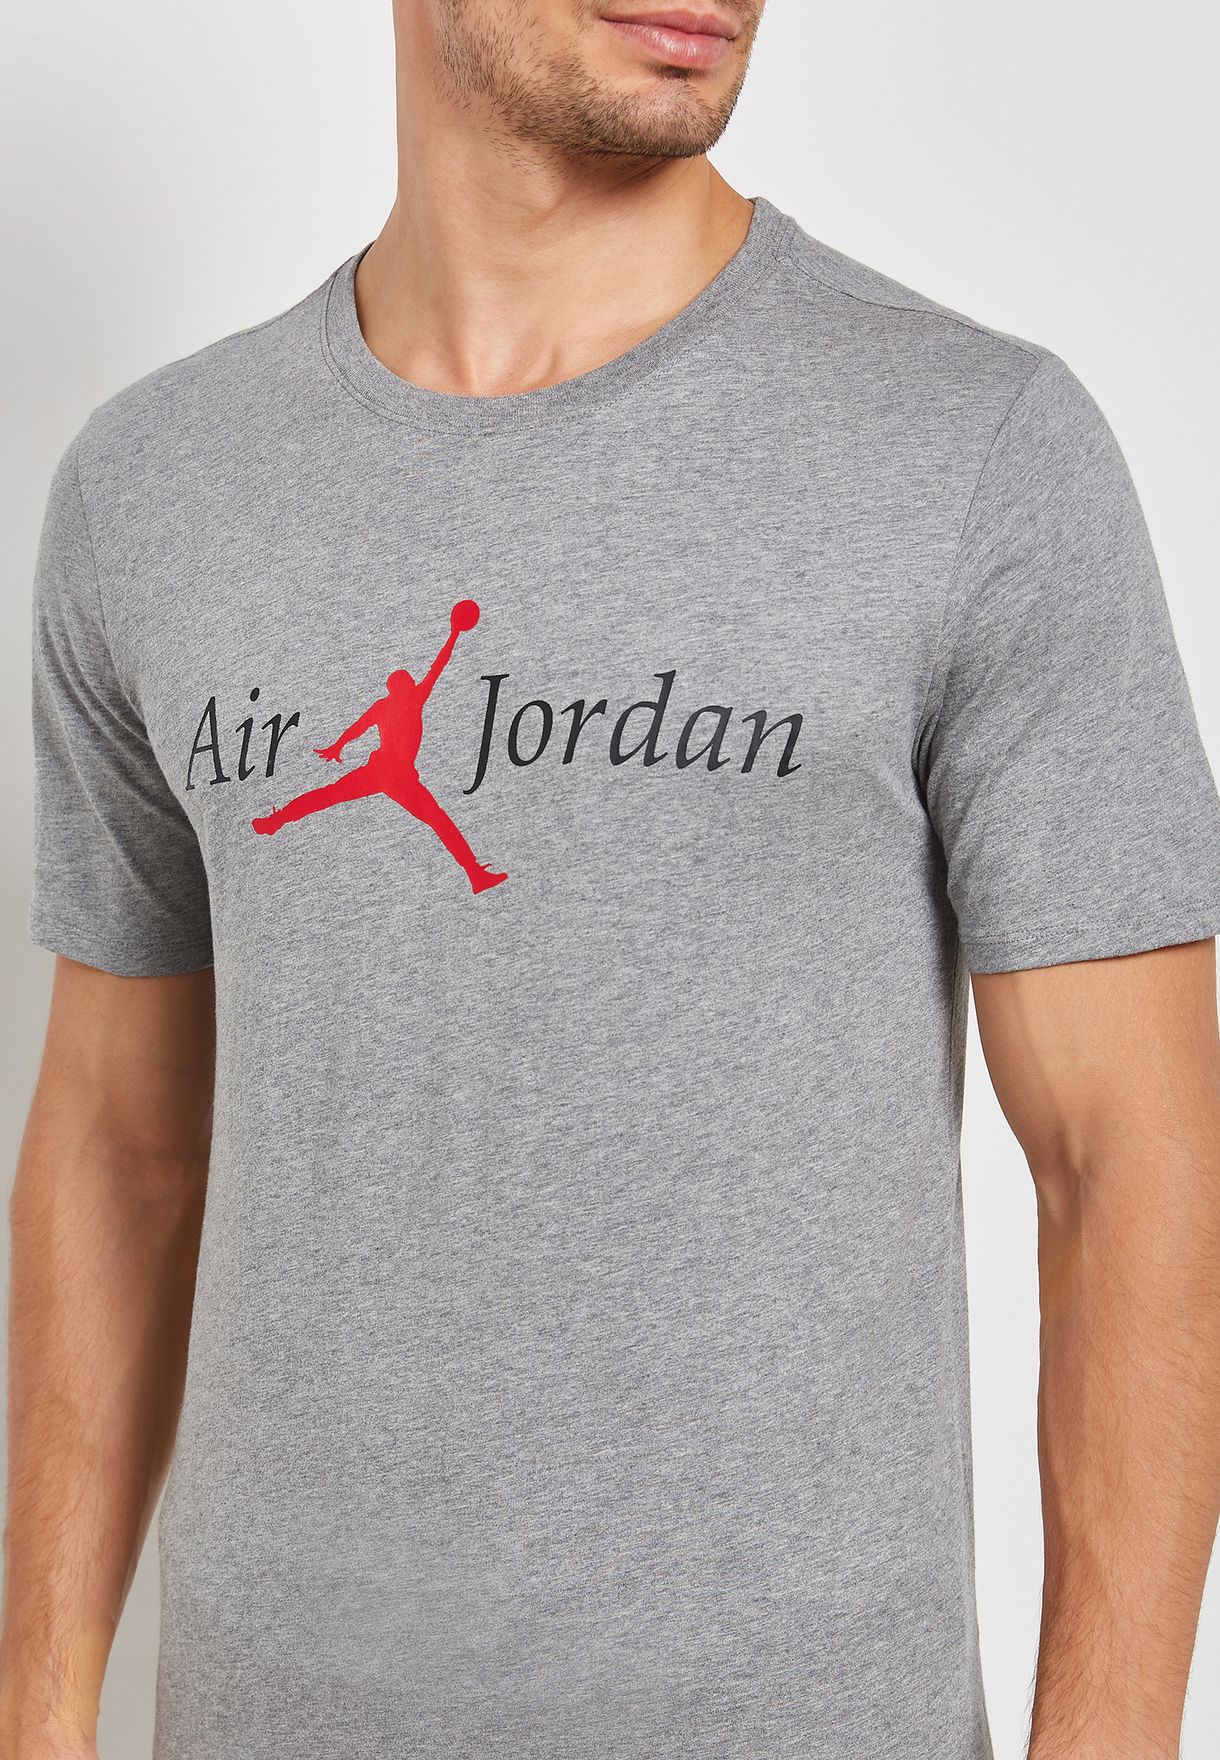 air jordan t shirt price